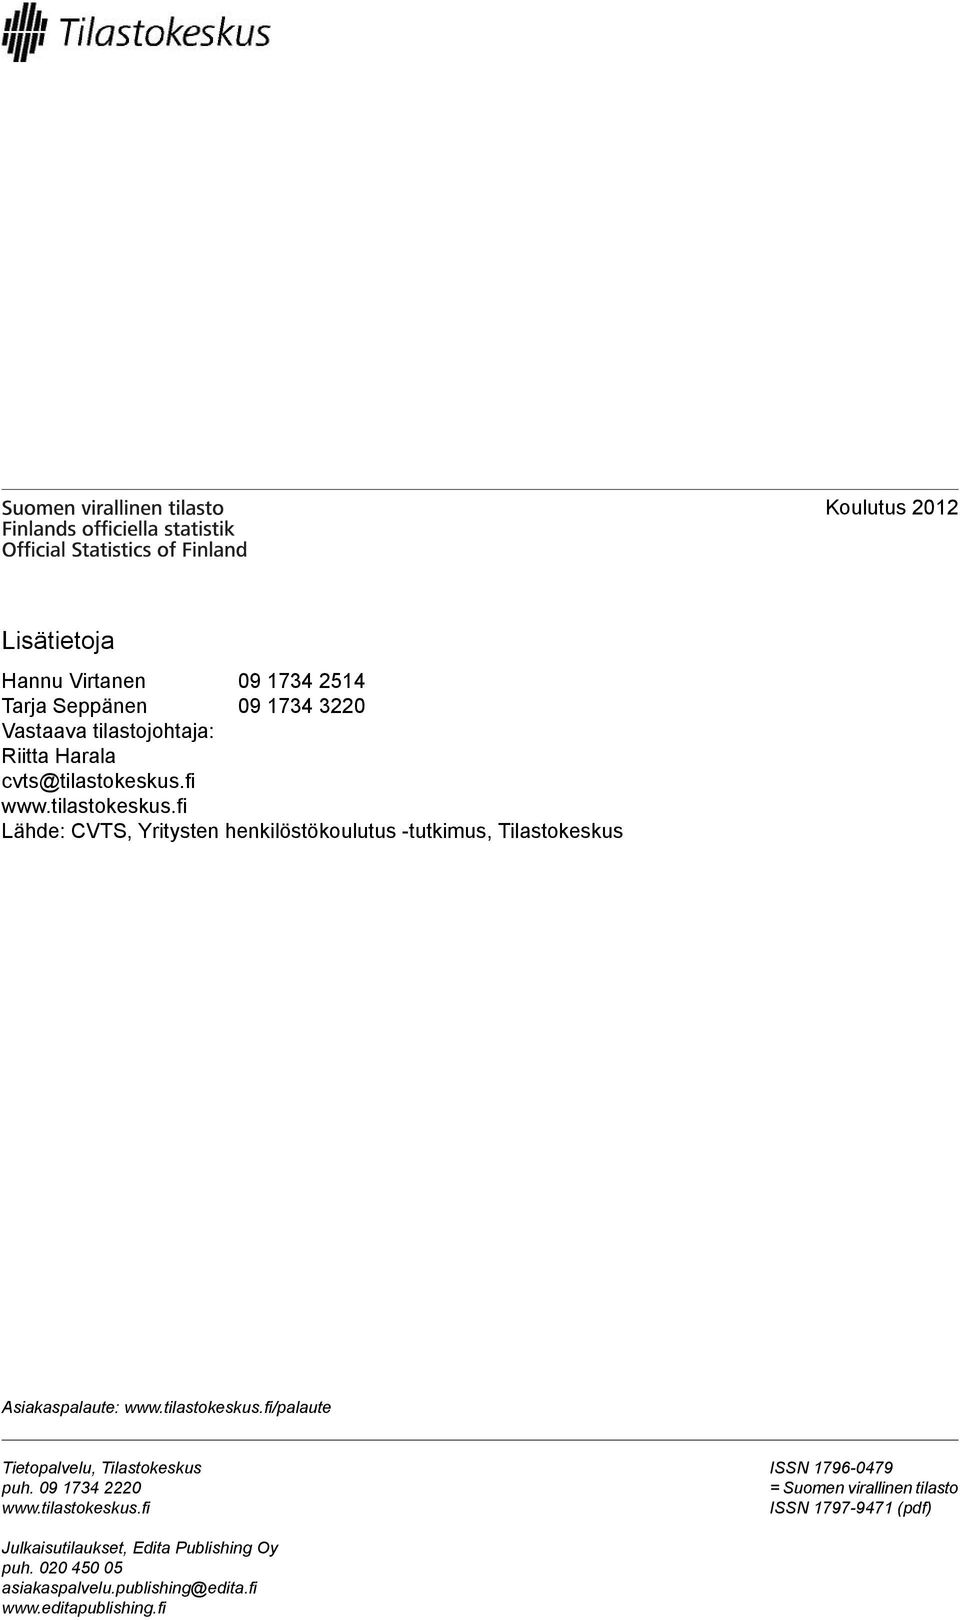 tilastokeskus.fi/palaute Tietopalvelu, Tilastokeskus puh. 09 1734 2220 www.tilastokeskus.fi ISSN 1796-0479 = Suomen virallinen tilasto ISSN 1797-9471 (pdf) Julkaisutilaukset, Edita Publishing Oy puh.